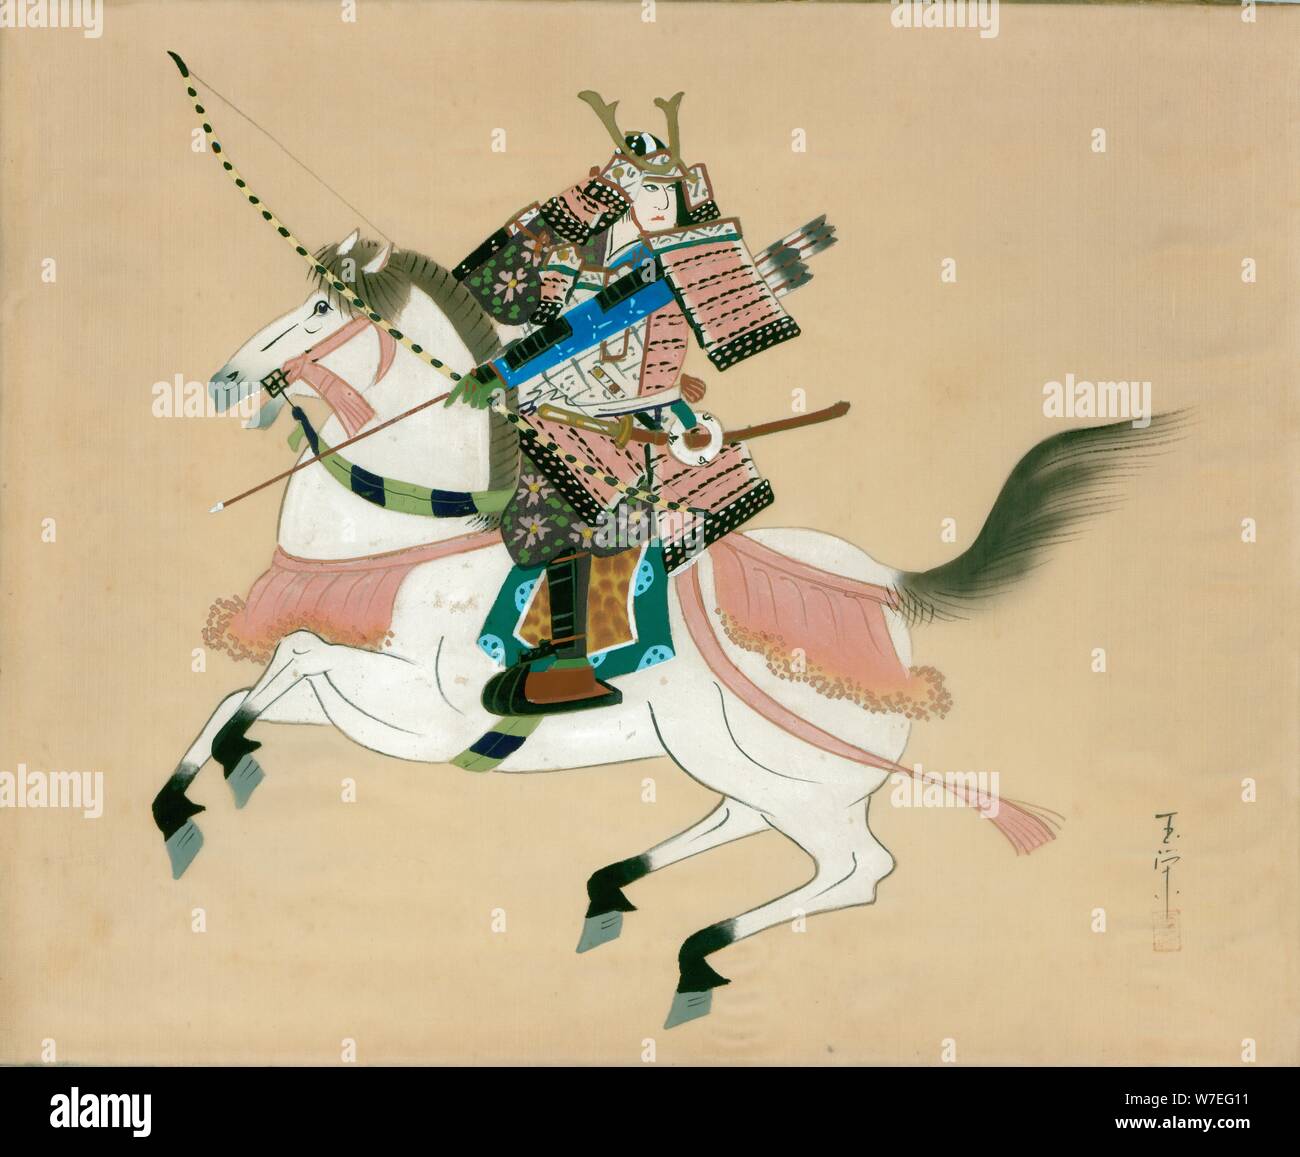 Samurai Warrior un cheval. Une peinture japonaise sur soie, dans un style traditionnel japonais. Artiste : Inconnu Banque D'Images